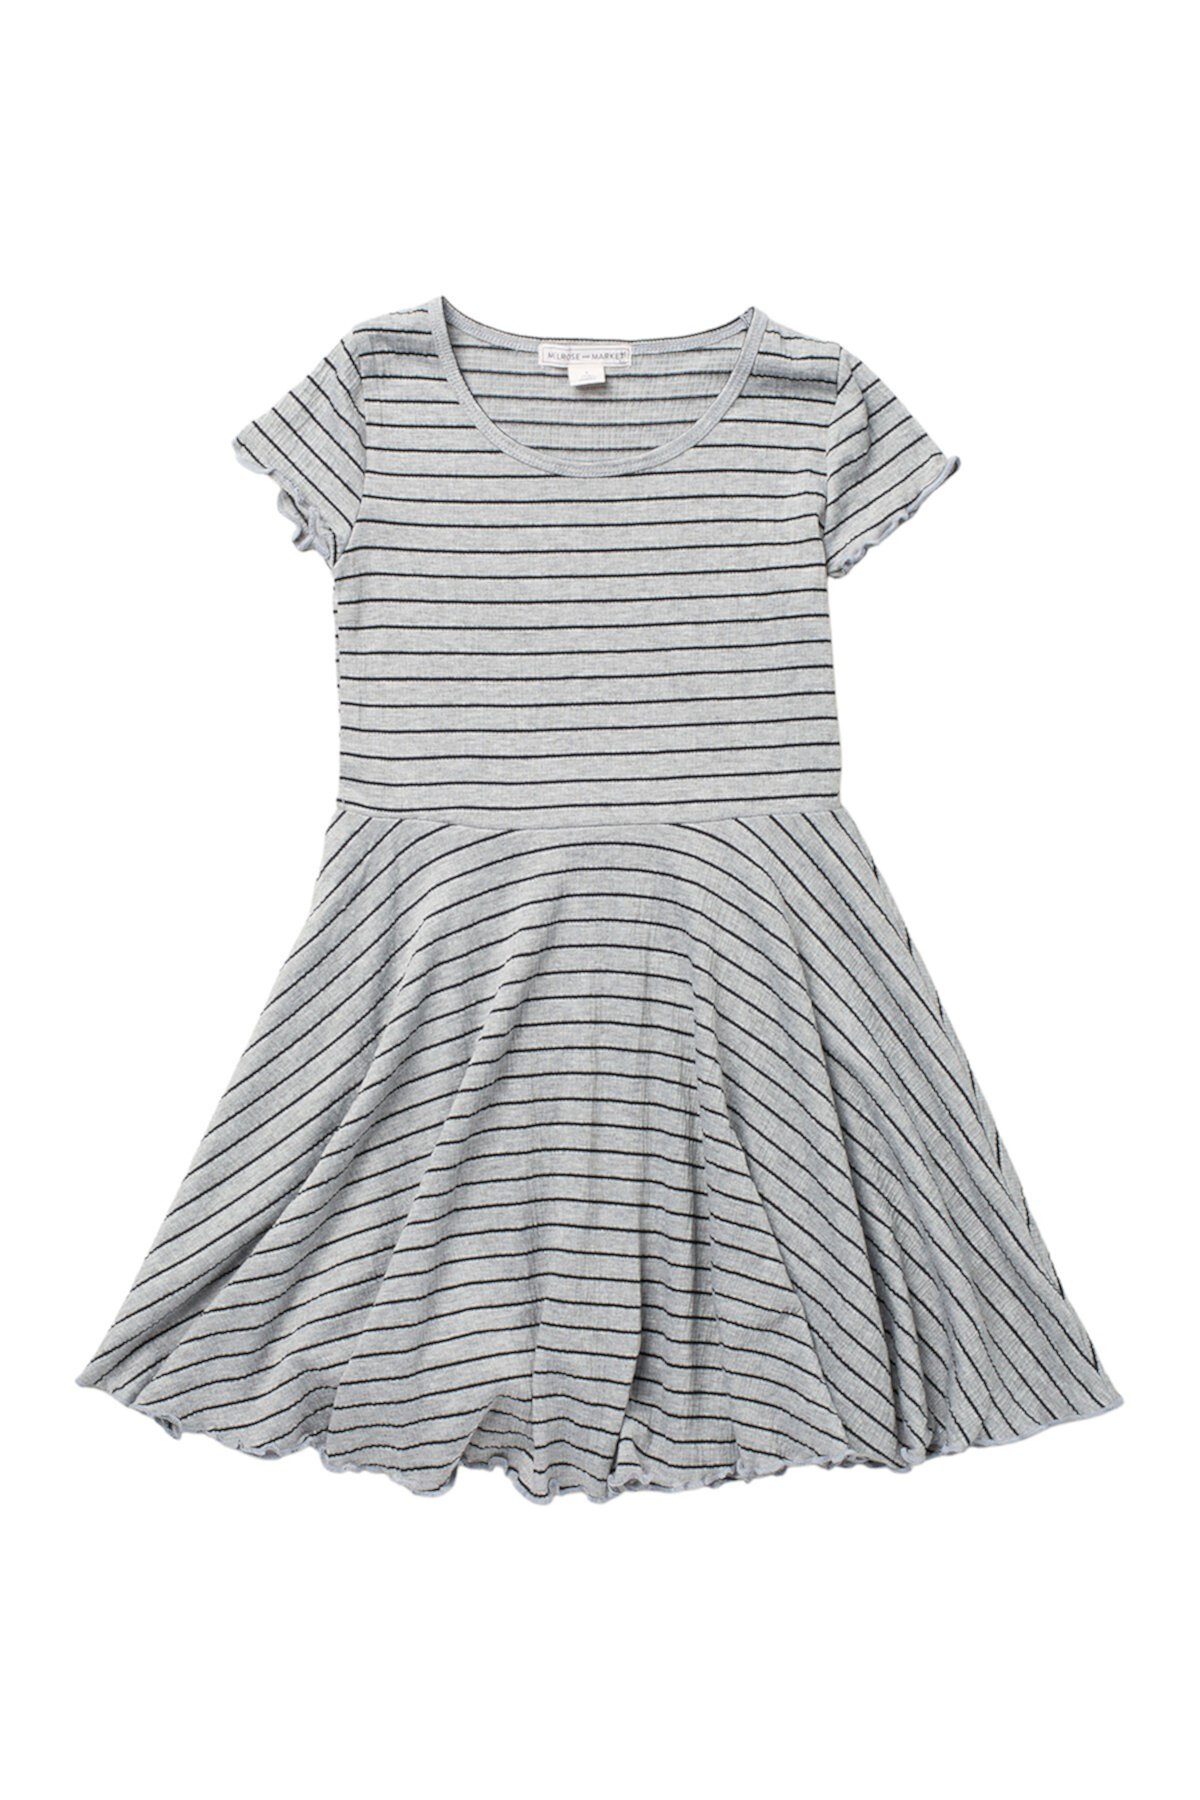 Полосатое платье с короткими рукавами с плиссированной юбкой (для больших девочек) Melrose and Market